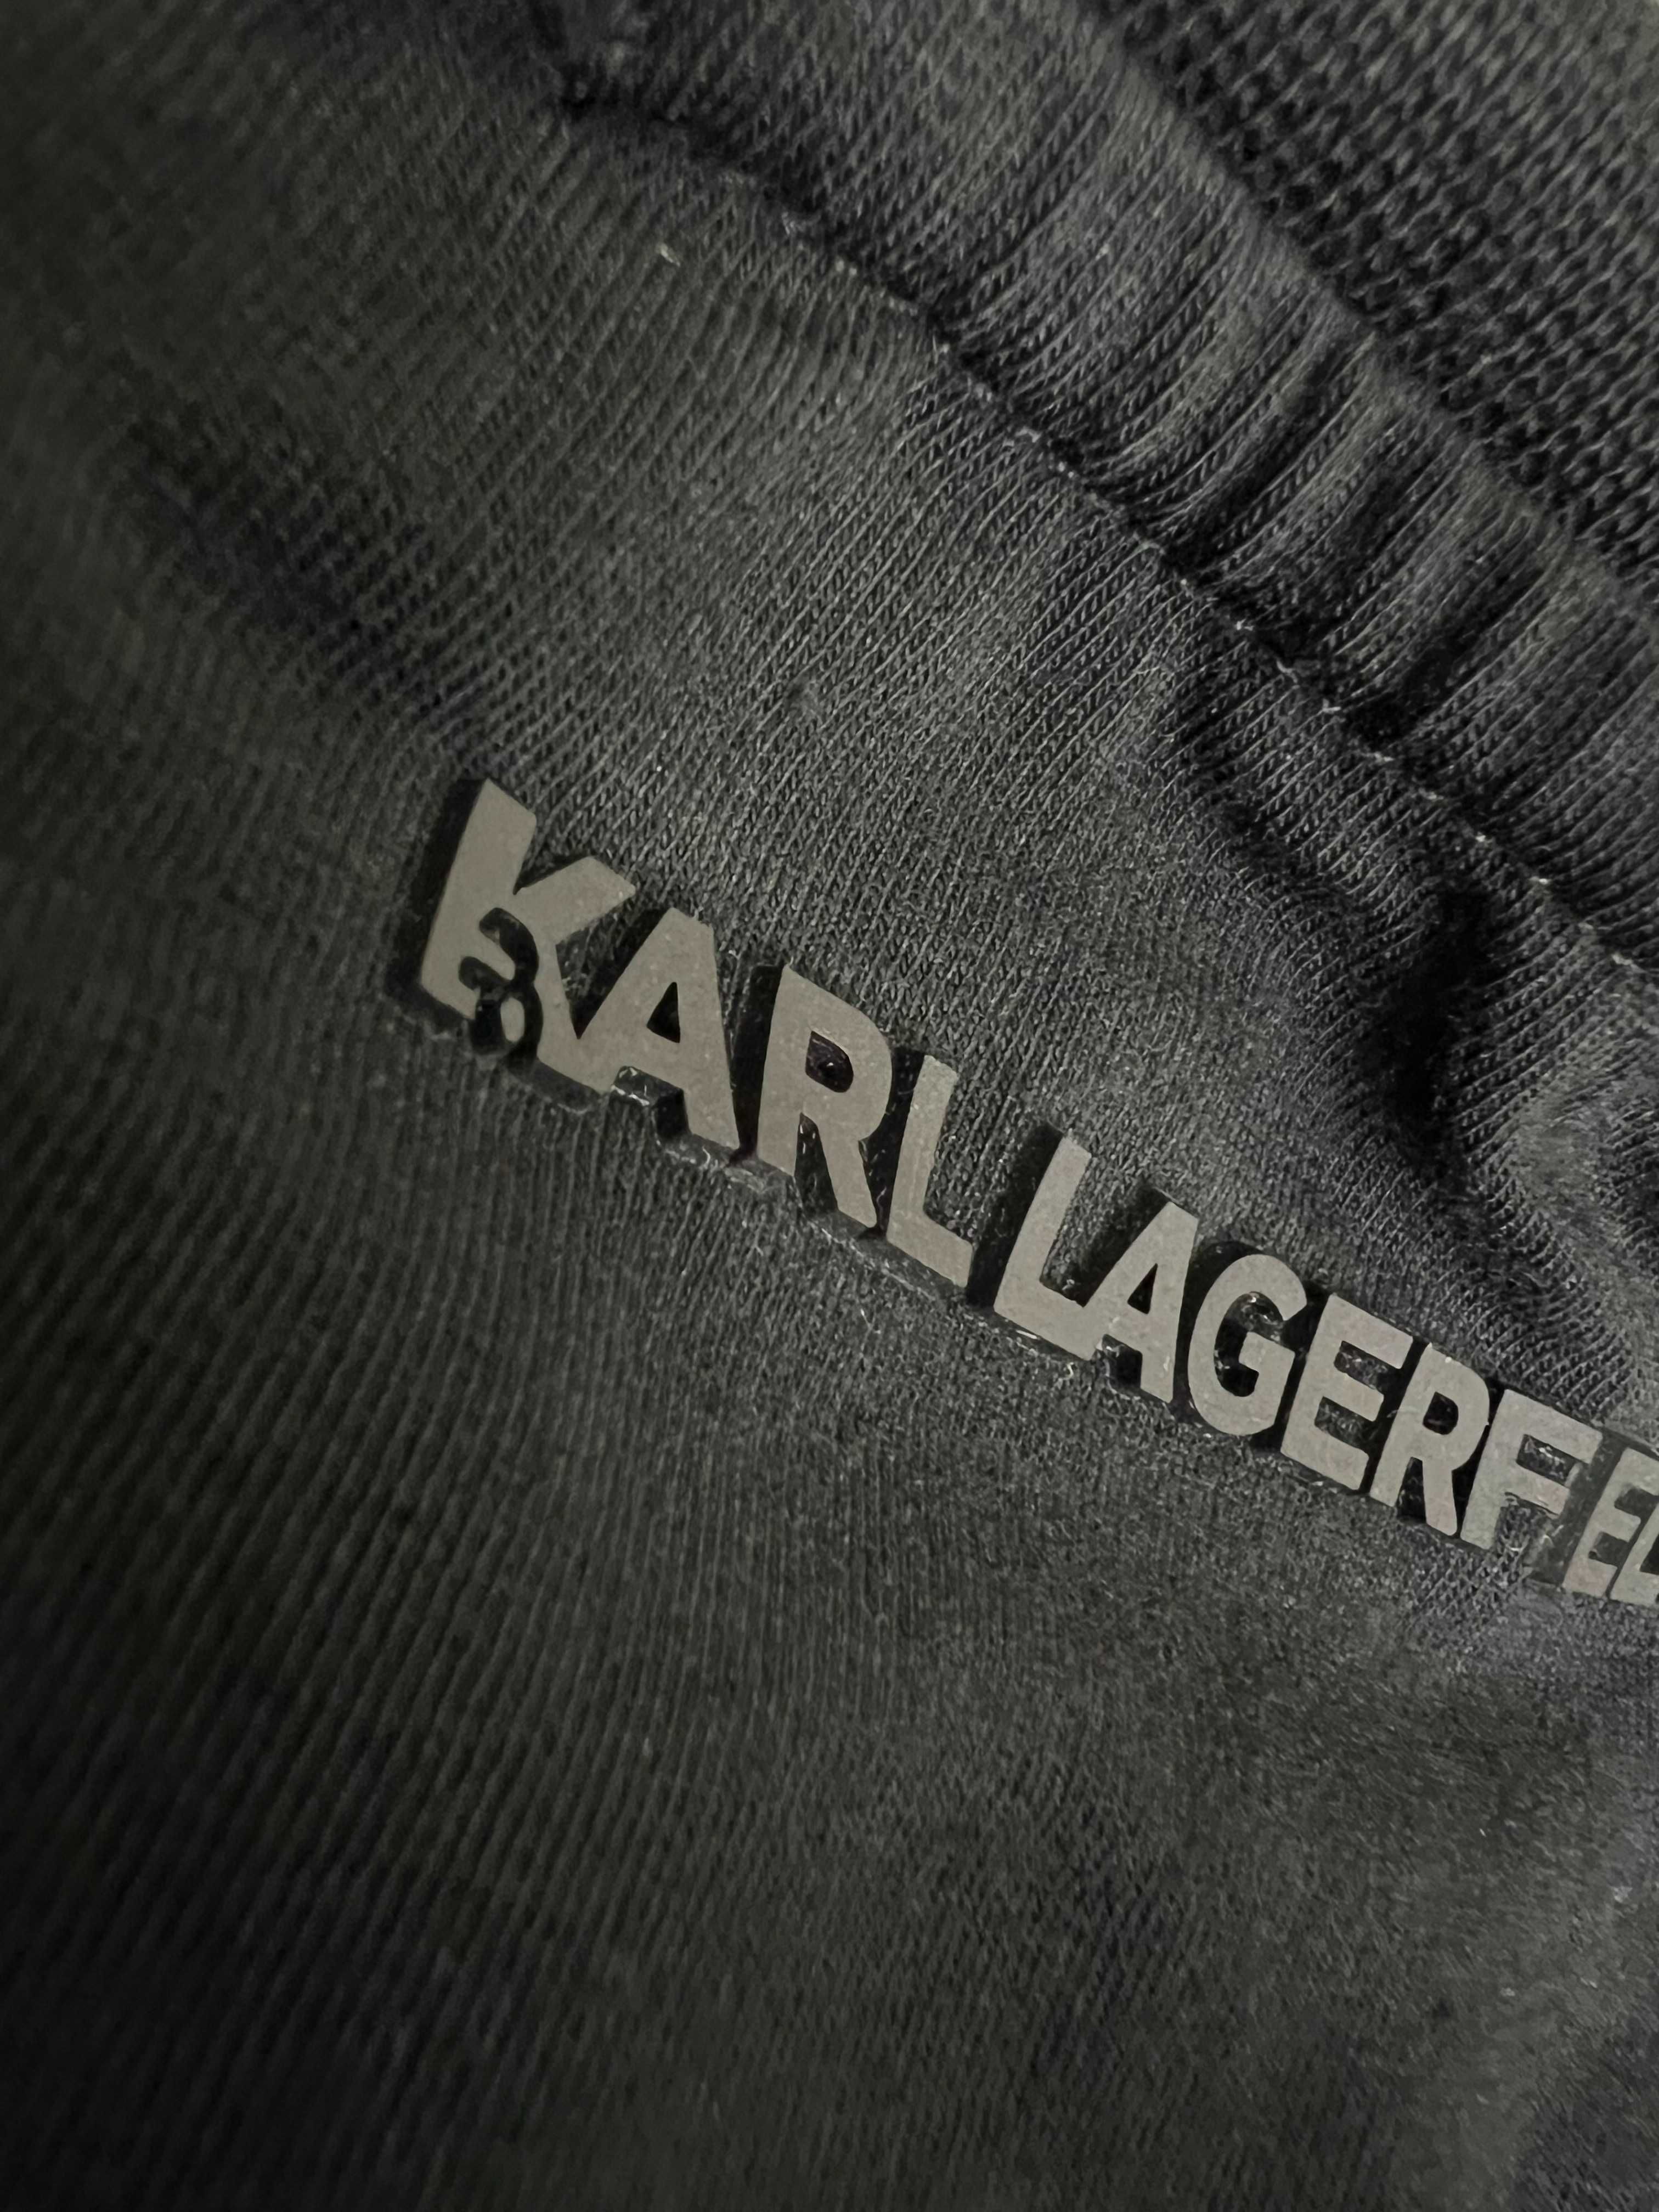 Автентична 23/24 Karl Lagerfeld тениска ЧЕРЕН и БЯЛ Модел -65% off